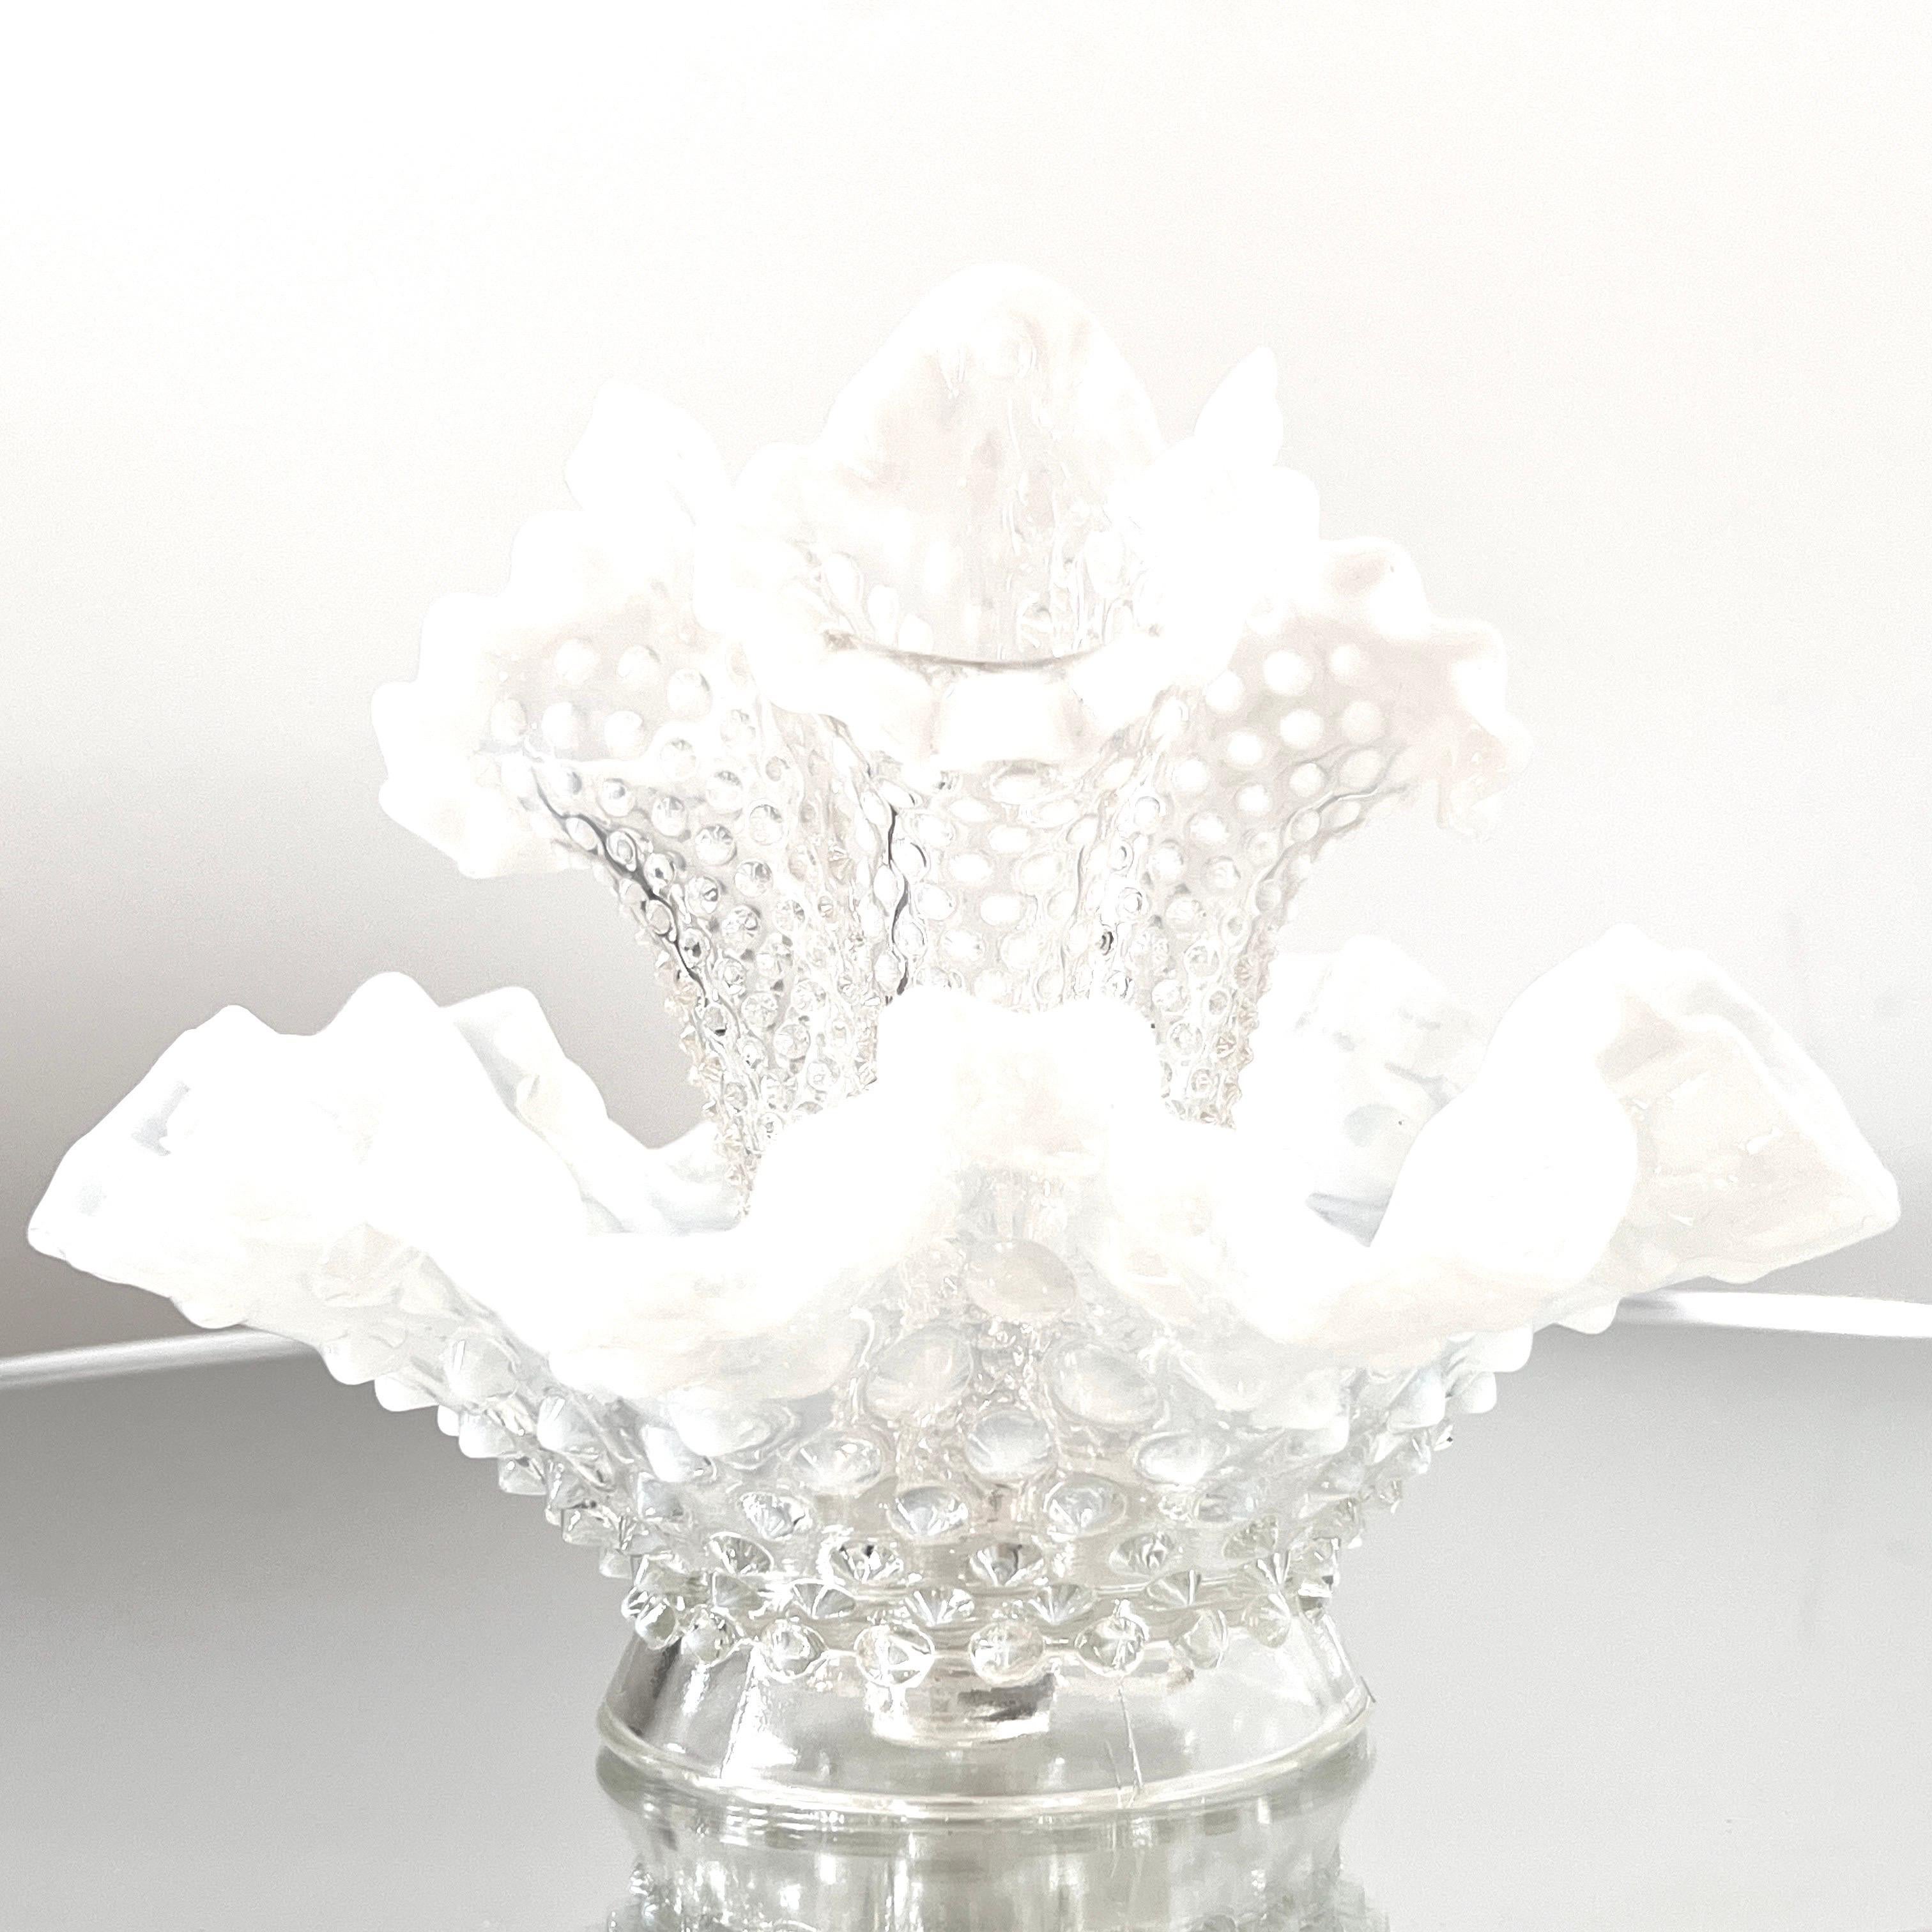 Diese vom viktorianischen Design inspirierte Vintage-Vase ist mit drei zentralen Knospenvasen ausgestattet. Die Knospenvasen haben florale Formen mit abnehmbaren Stielen, die aus klarem Diamantglas und weißen Opalnägeln bestehen. Die Schale hat